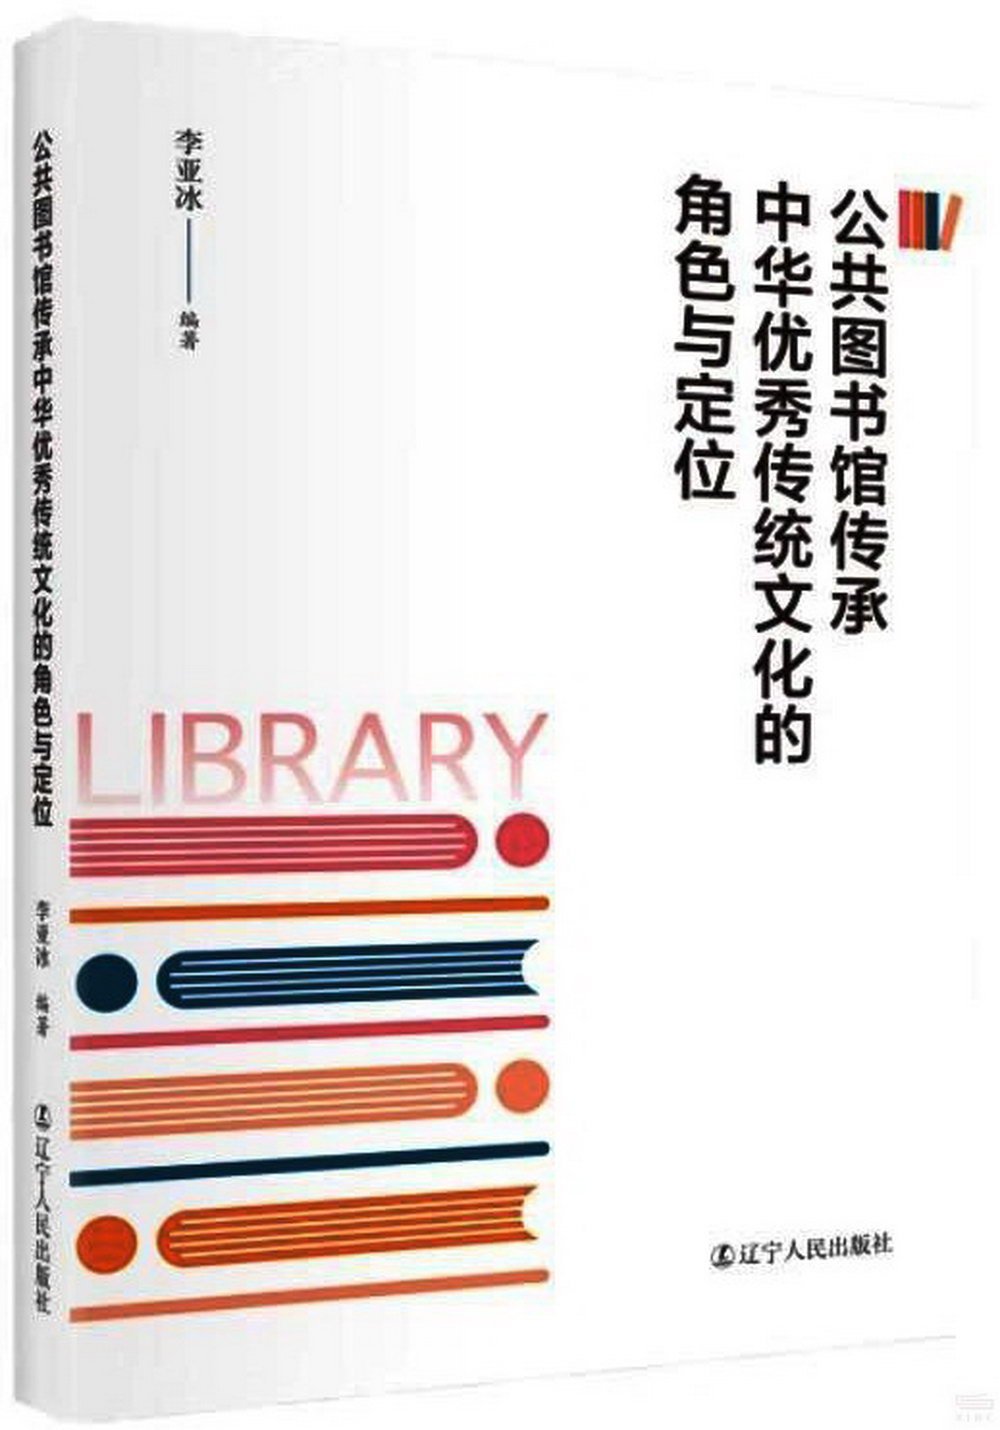 公共圖書館傳承中華優秀傳統文化的角色與定位